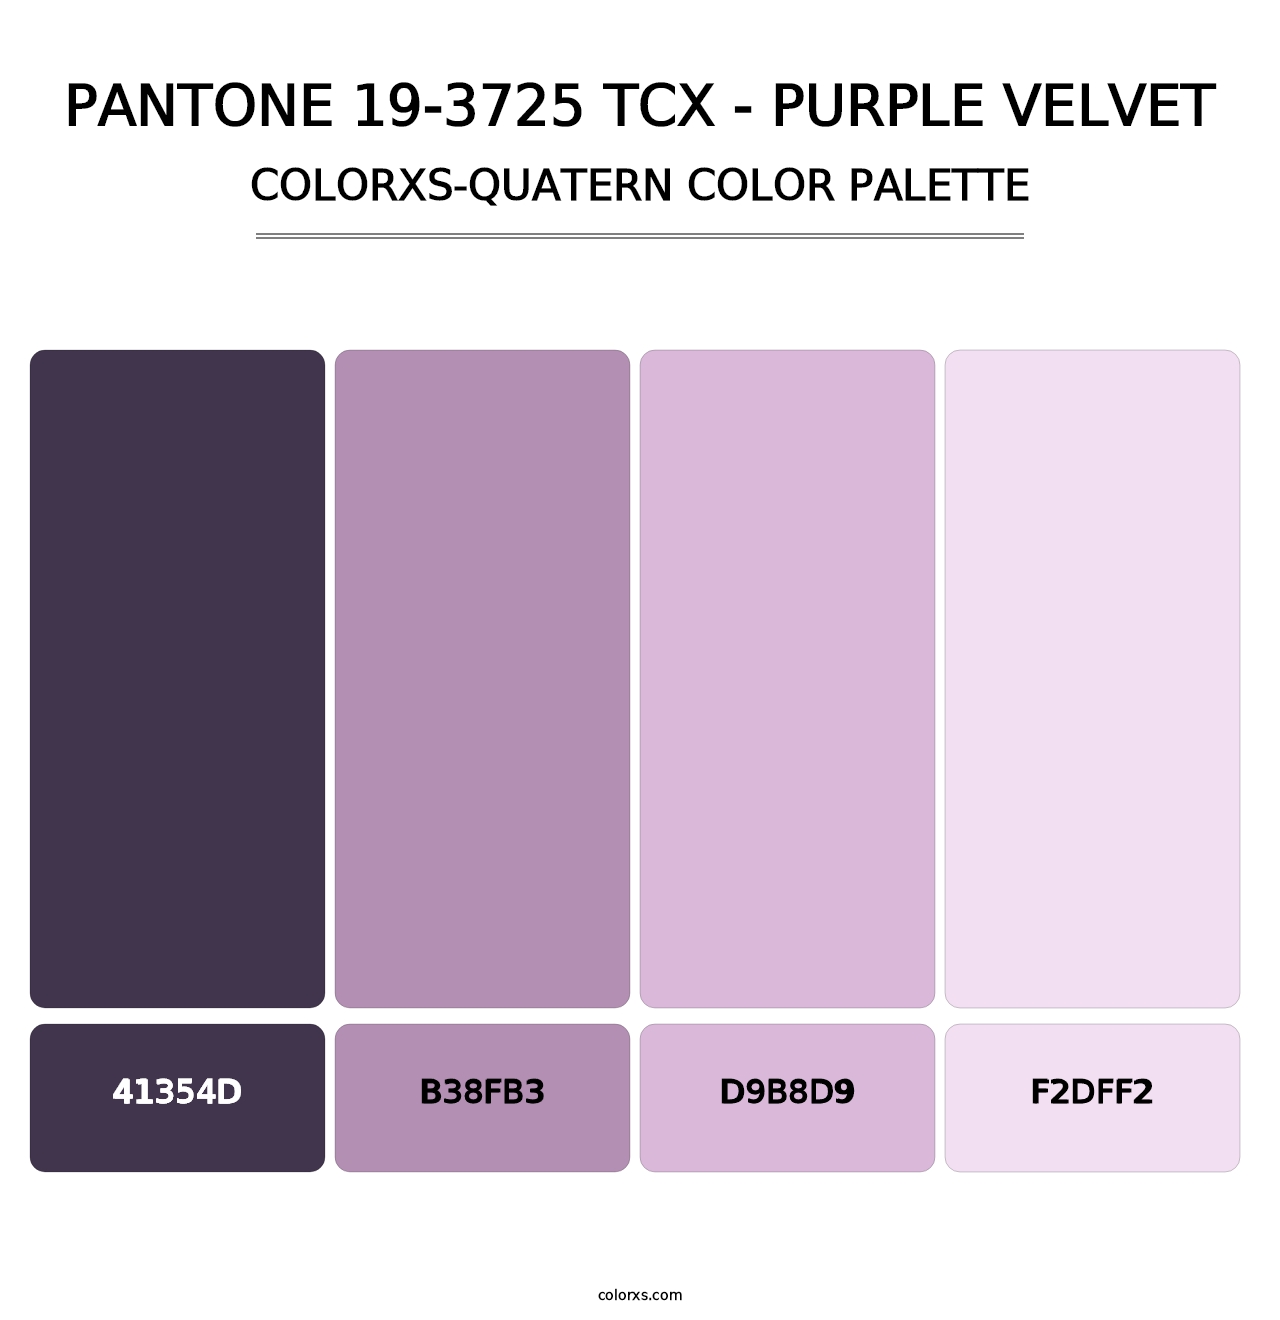 PANTONE 19-3725 TCX - Purple Velvet - Colorxs Quatern Palette